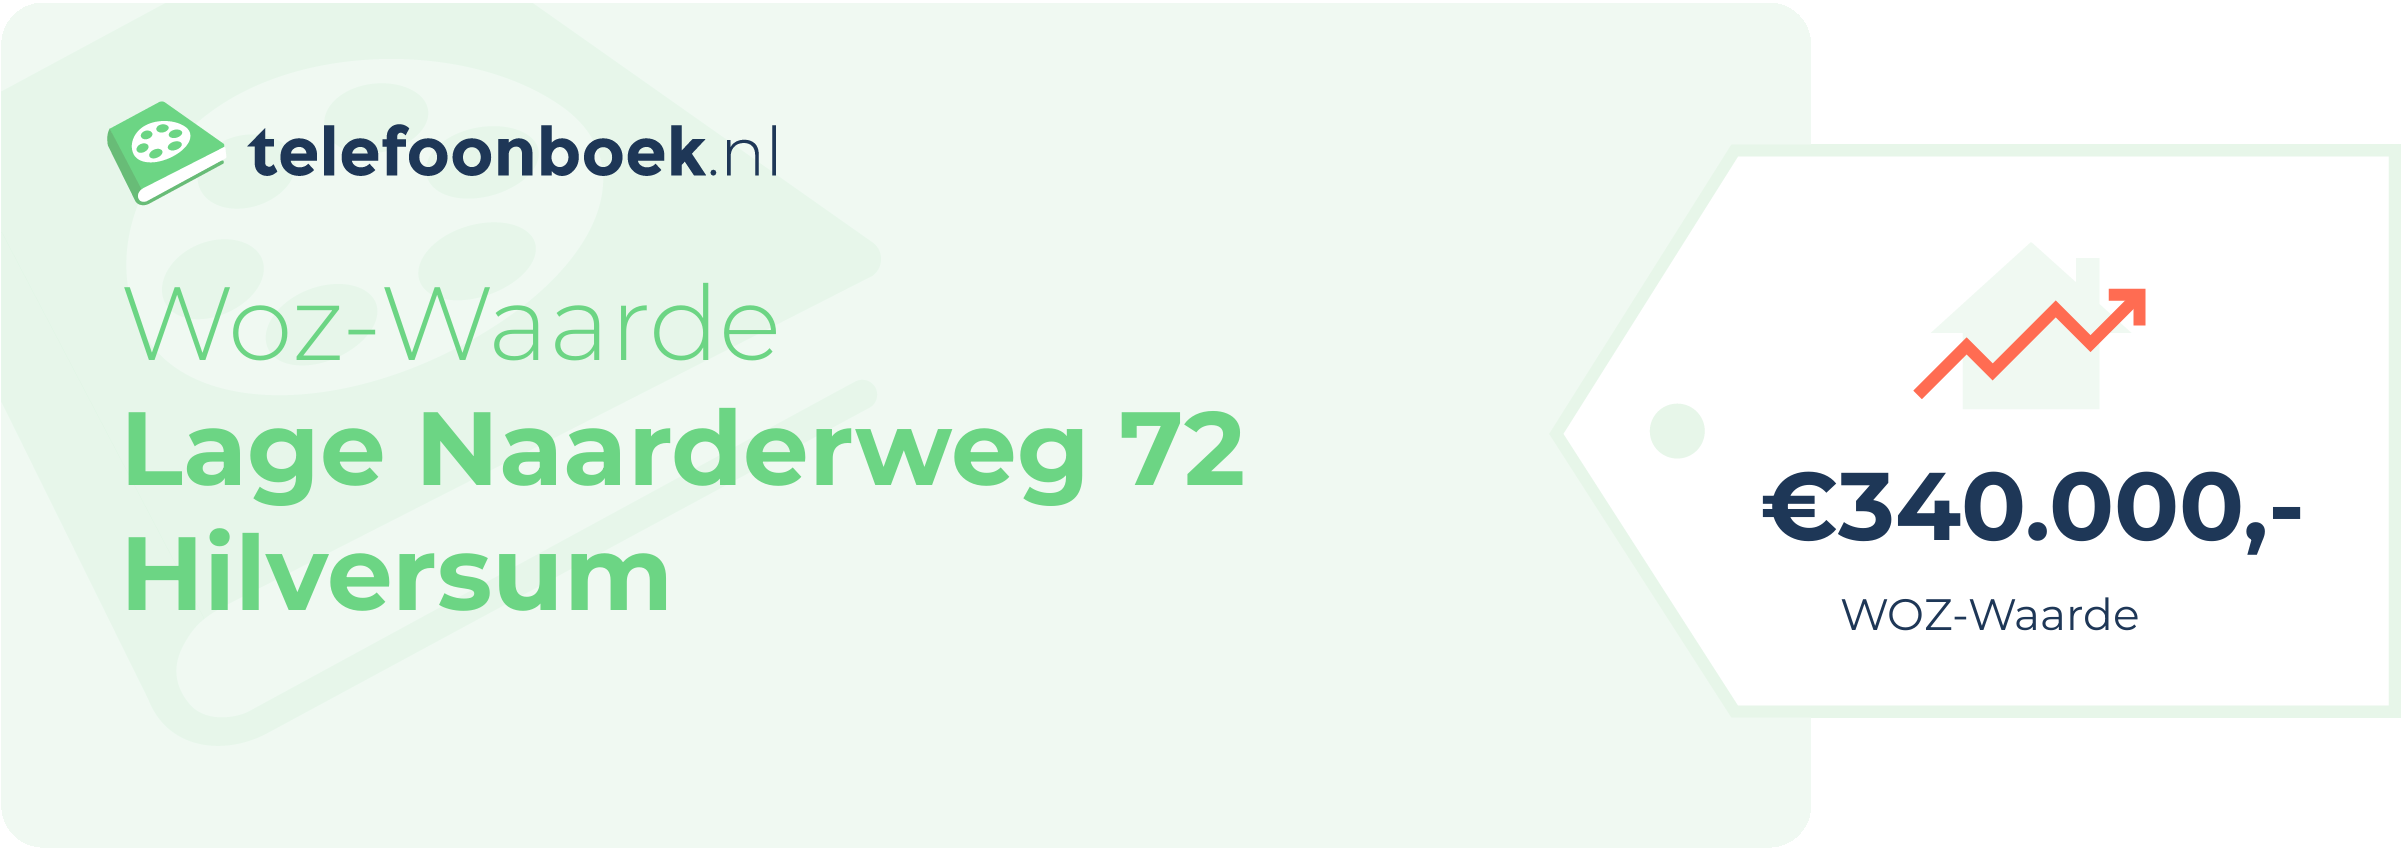 WOZ-waarde Lage Naarderweg 72 Hilversum